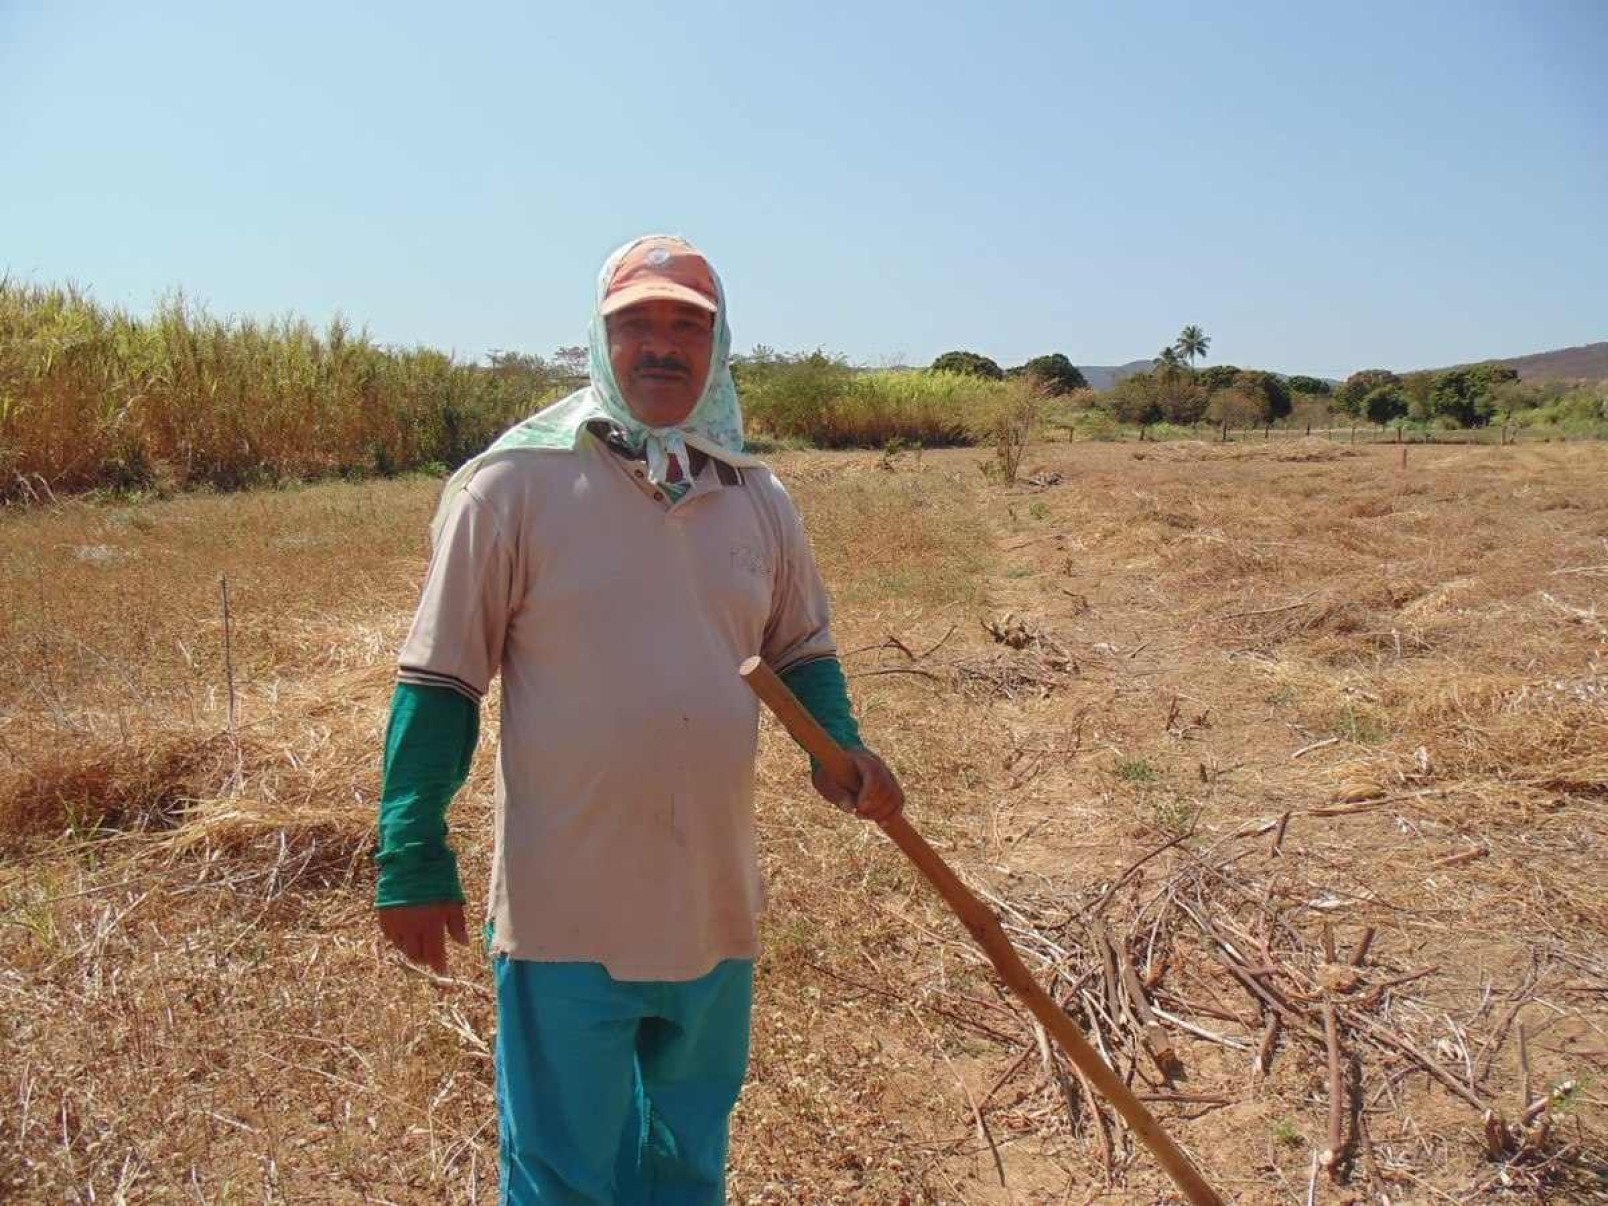 MG: produtores rurais atingidos por excessos climáticos vão receber auxílio